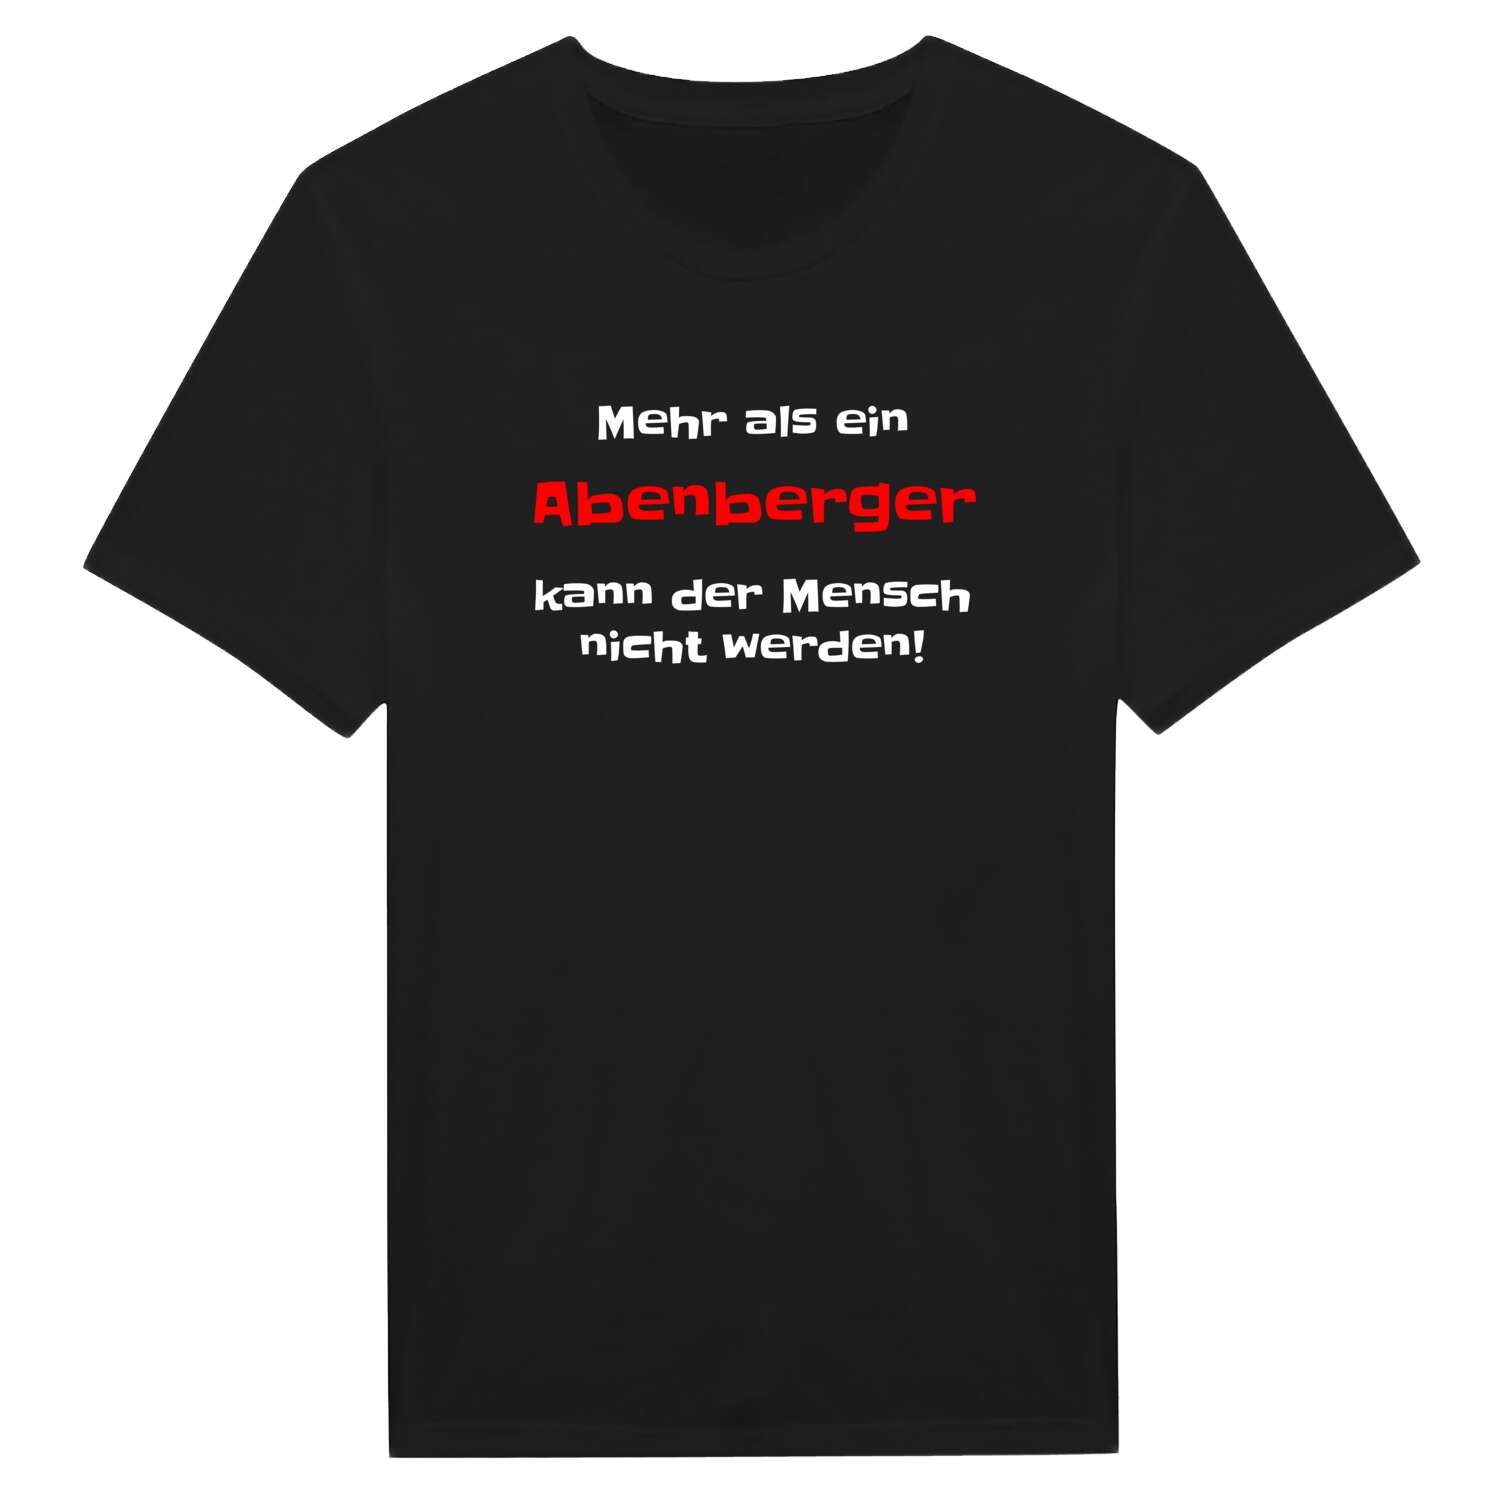 Abenberg T-Shirt »Mehr als ein«